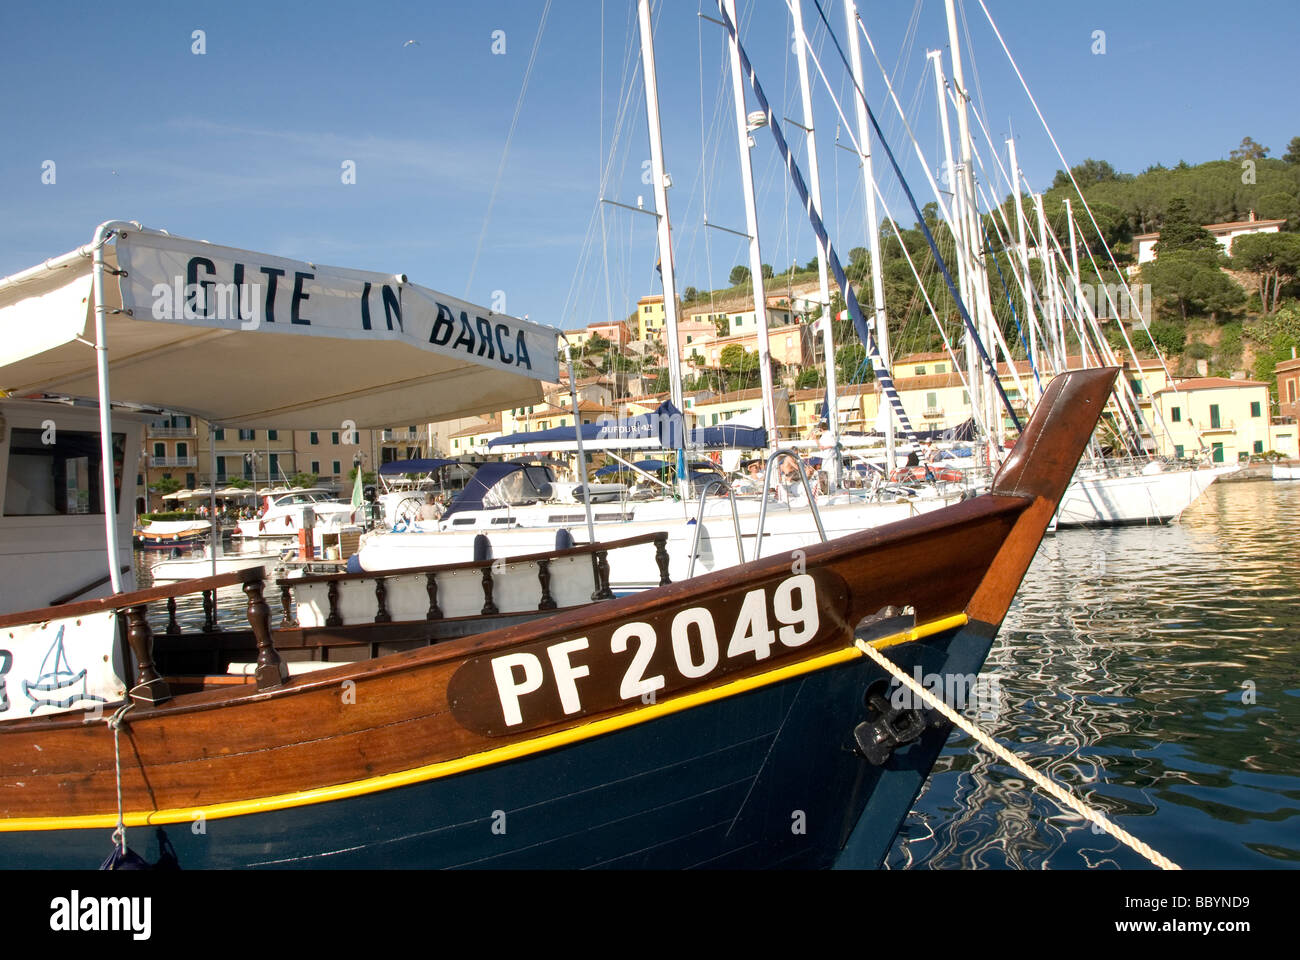 El Gite en barca (tours) Barco Barco en el puerto deportivo de Porto Azzurro, en la isla de Elba Foto de stock